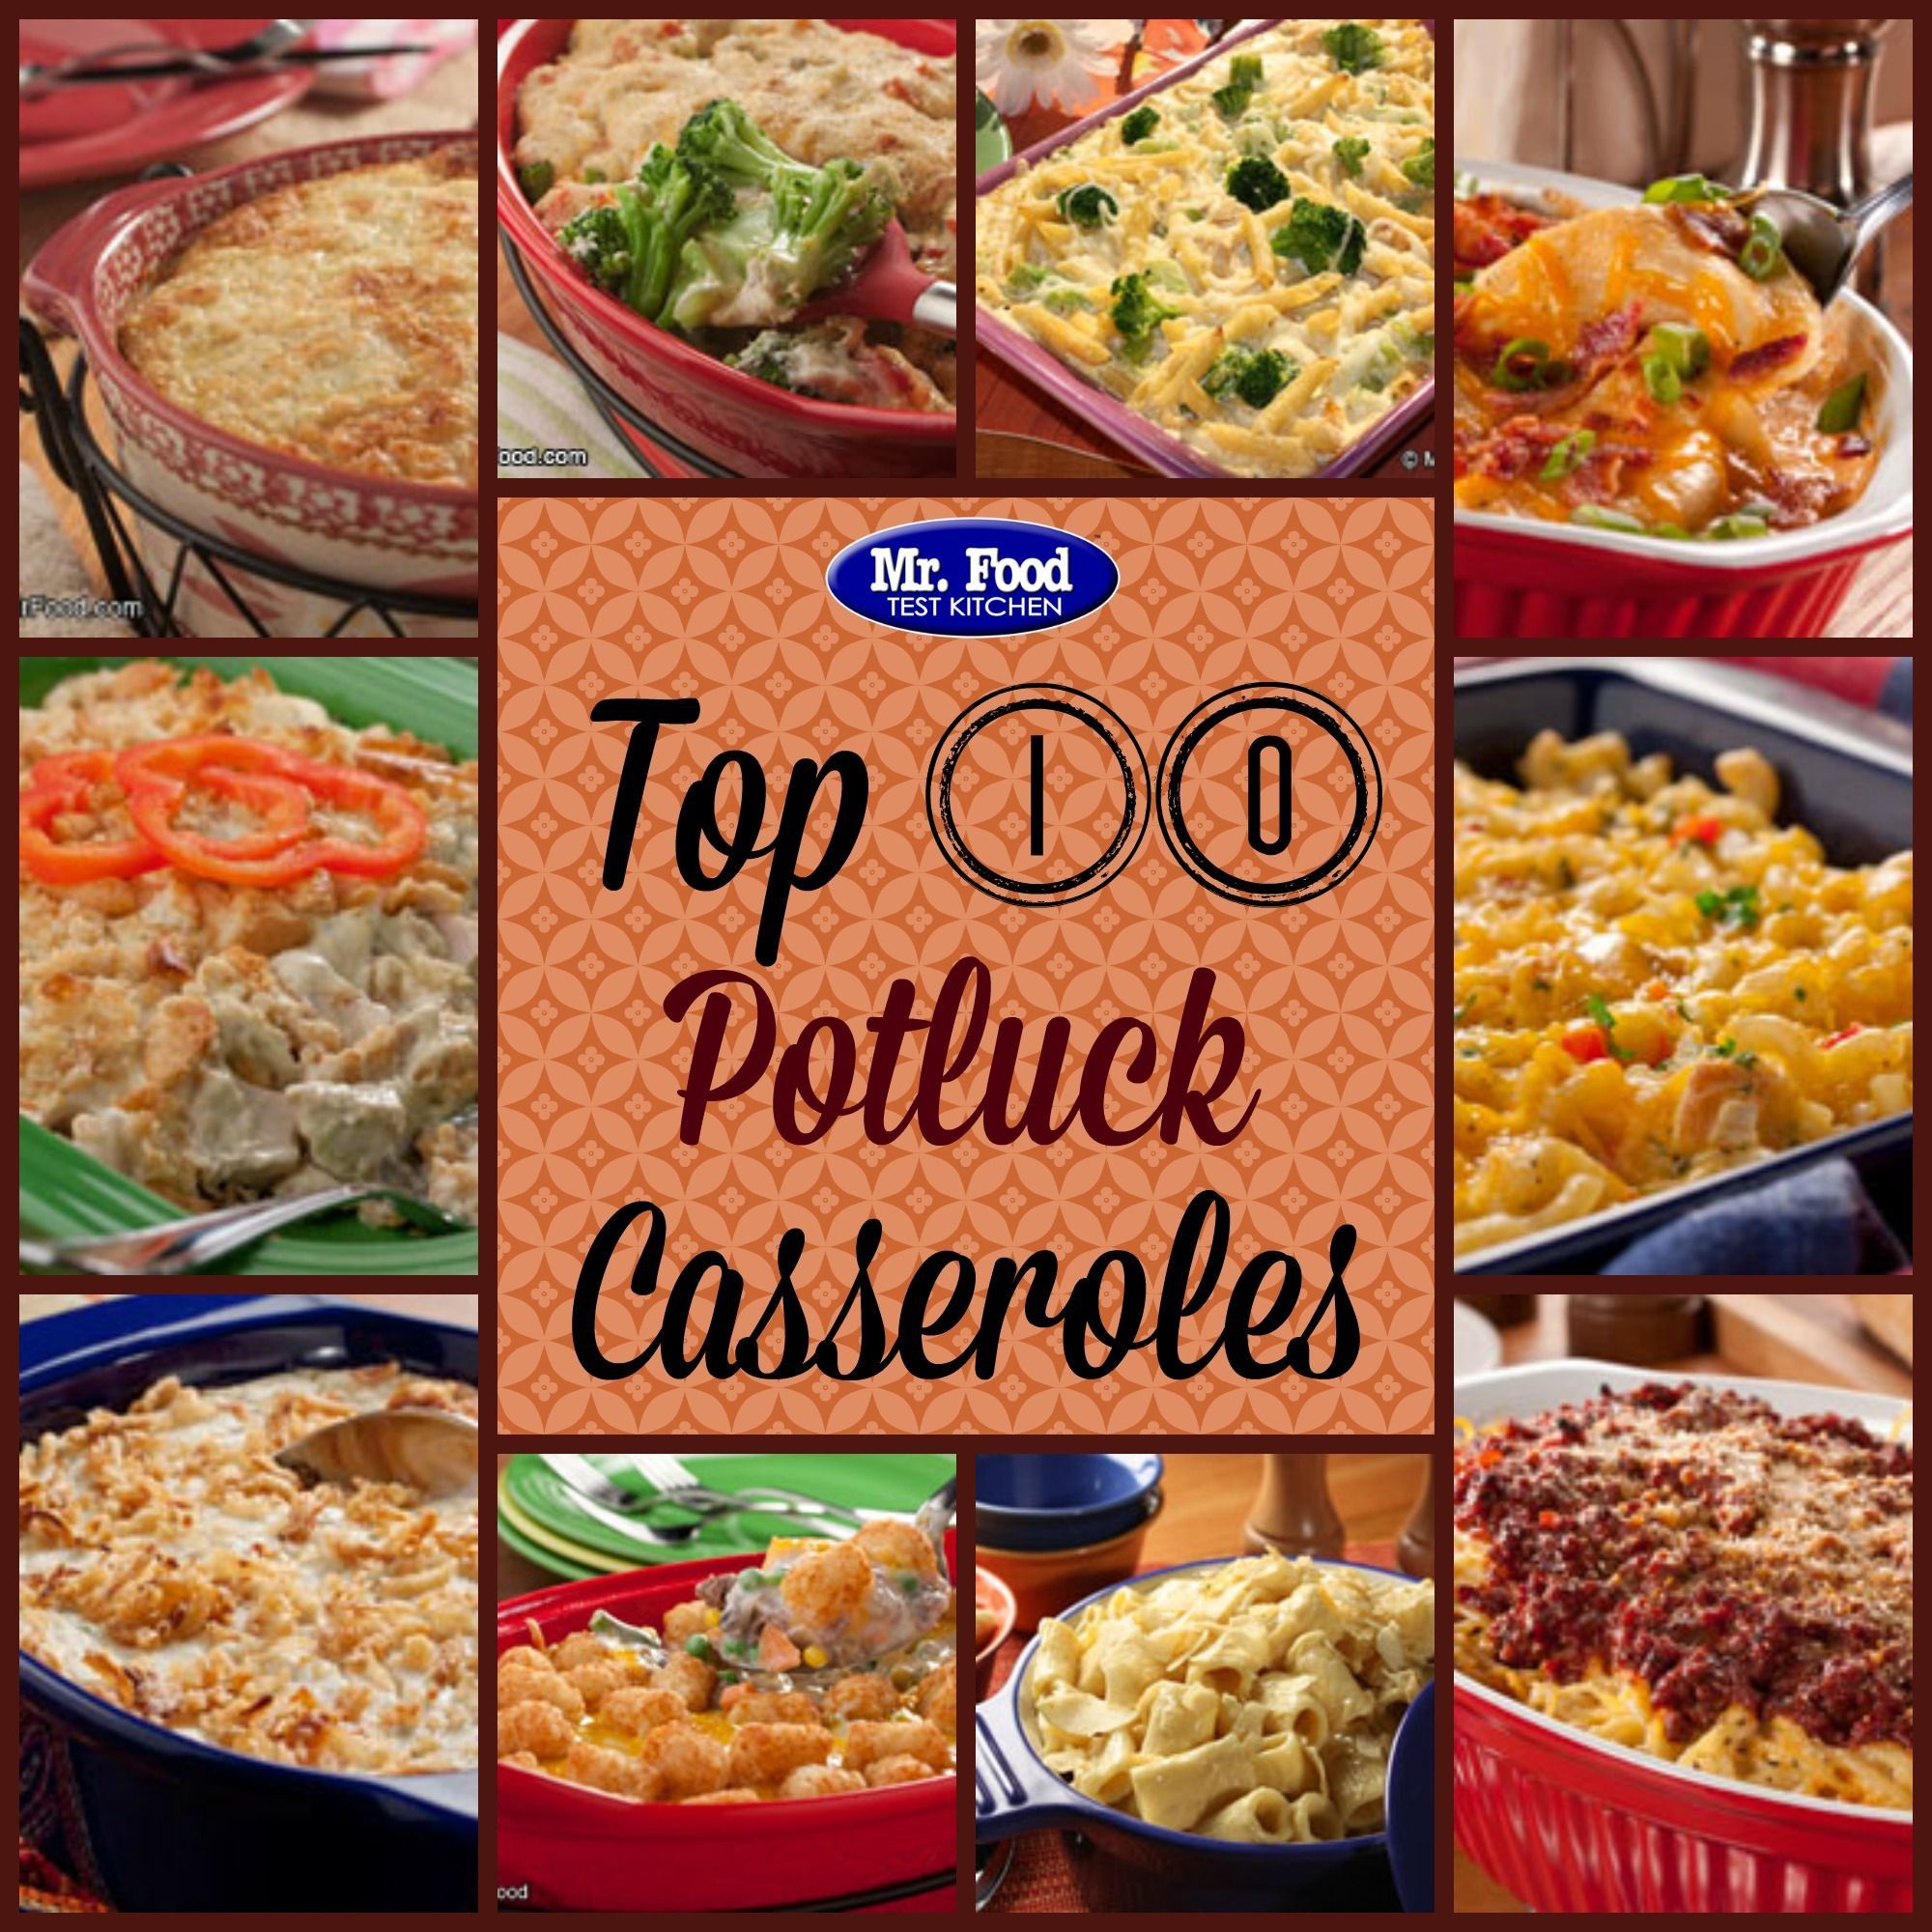 Potluck Dinner Ideas
 Potluck Casserole Recipes 10 Simple Casserole Recipes for